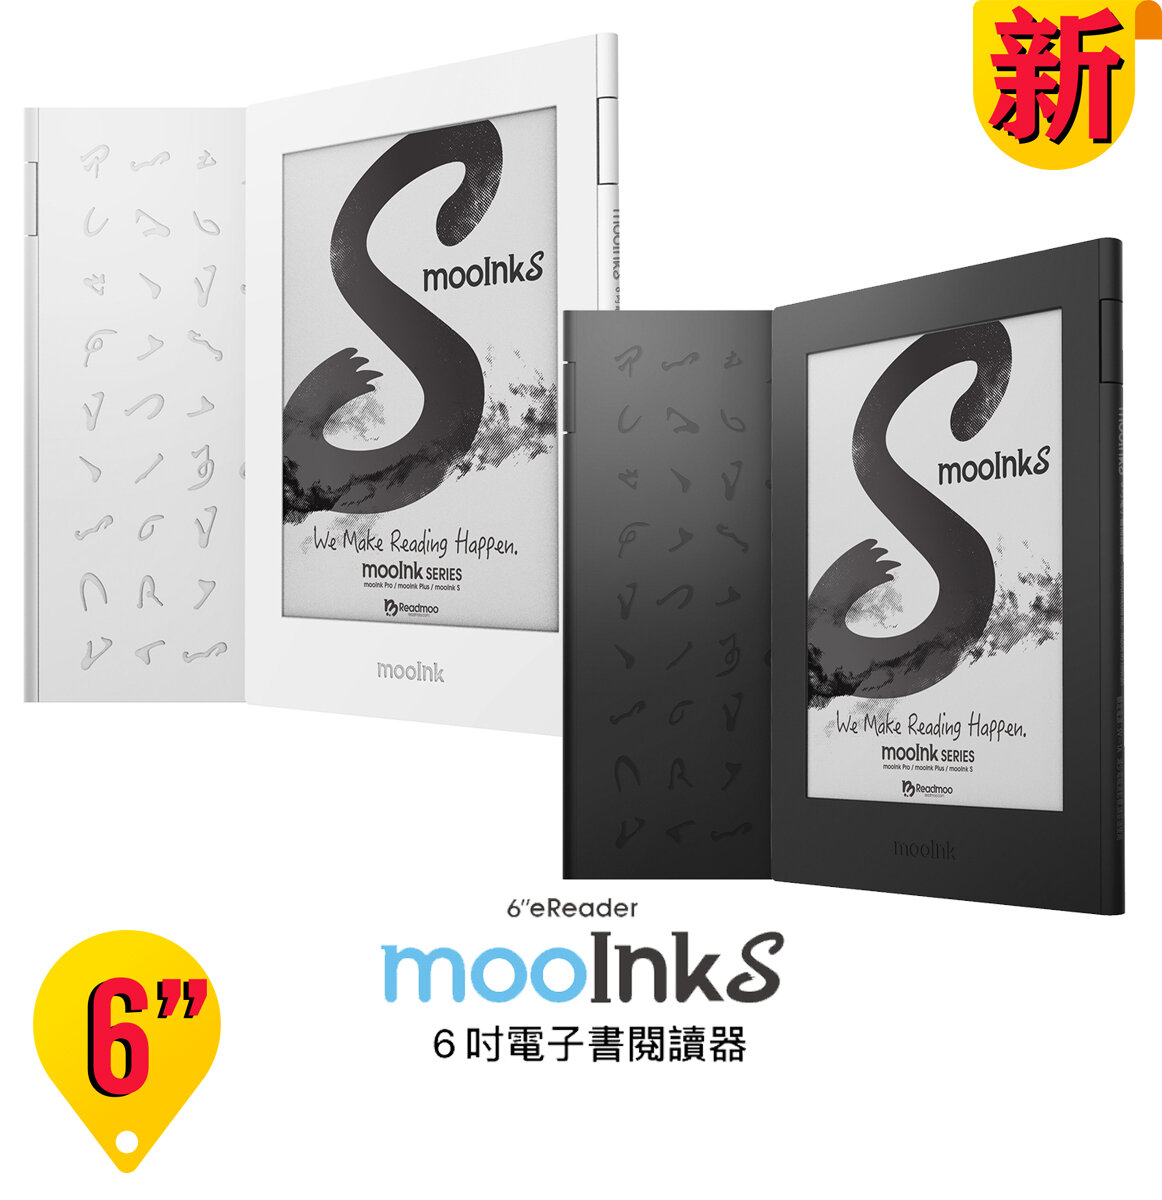 Readmoo 讀墨 mooInk S 6 吋電子書閱讀器 - (硯墨黑)